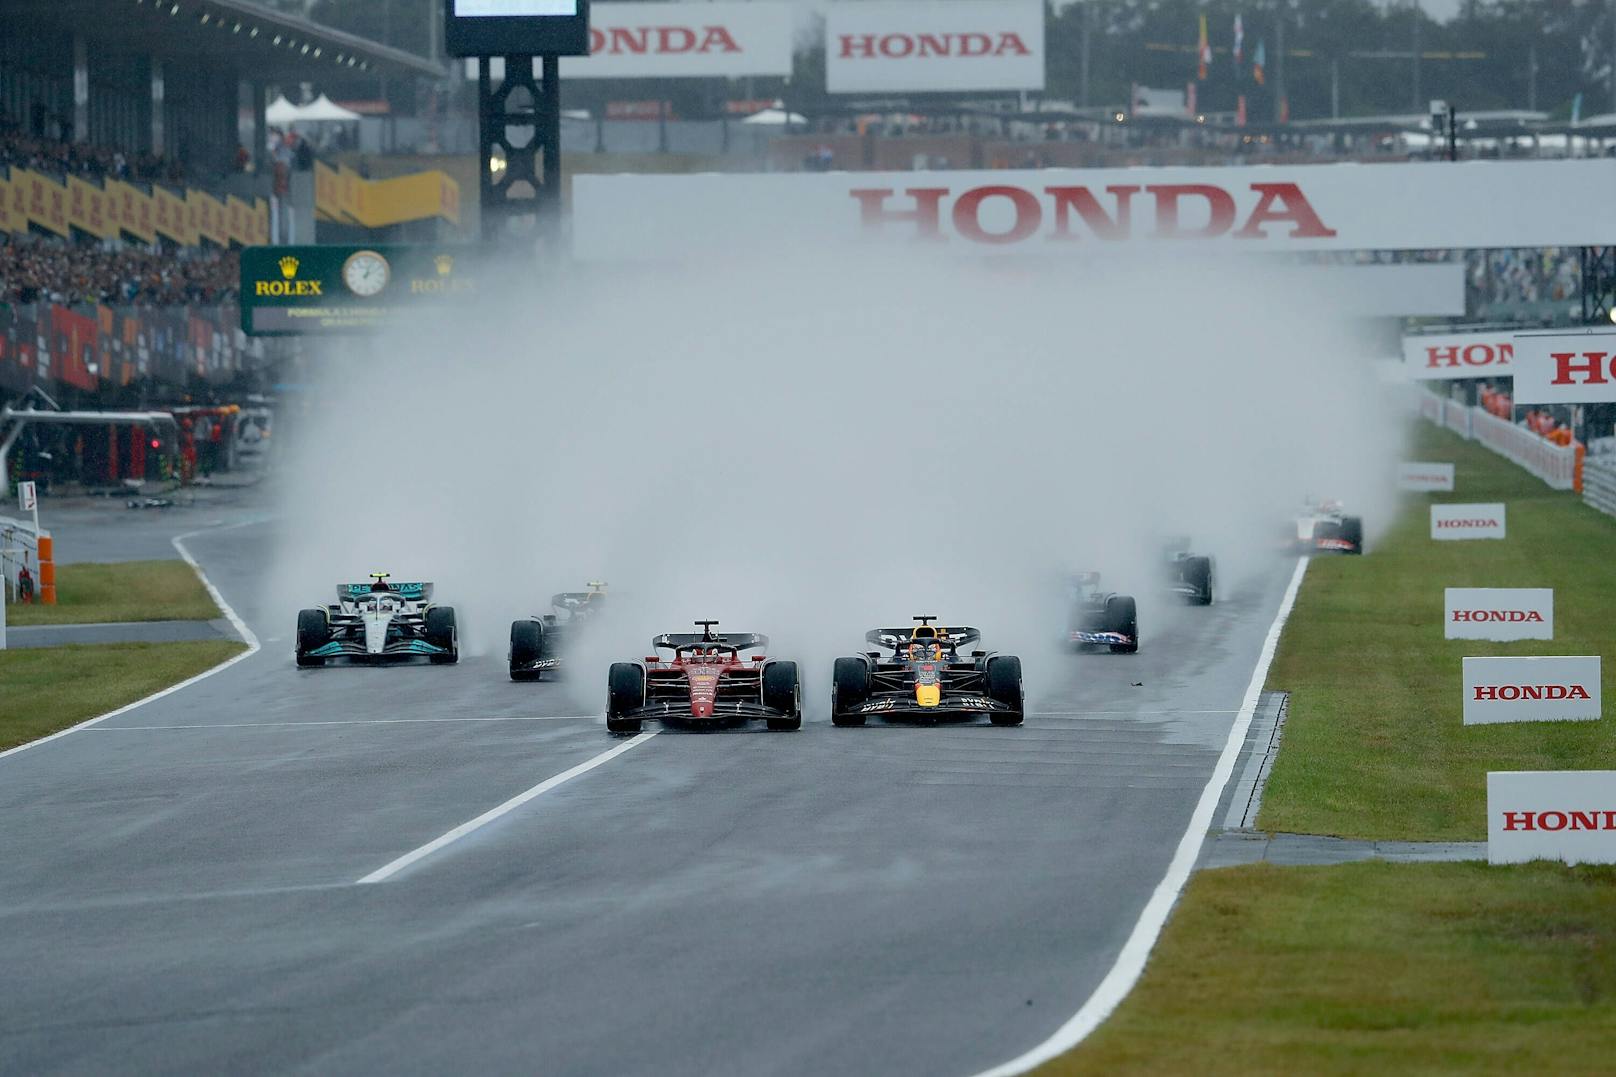 Regen-Chaos sorgte in Japan für einen stark verkürzten Grand Prix. Bei nur 29 Runden unter widrigsten Bedingungen gibt es ausnahmsweise keine Noten - aber die gewohnte Einzelkritik für alle Piloten.